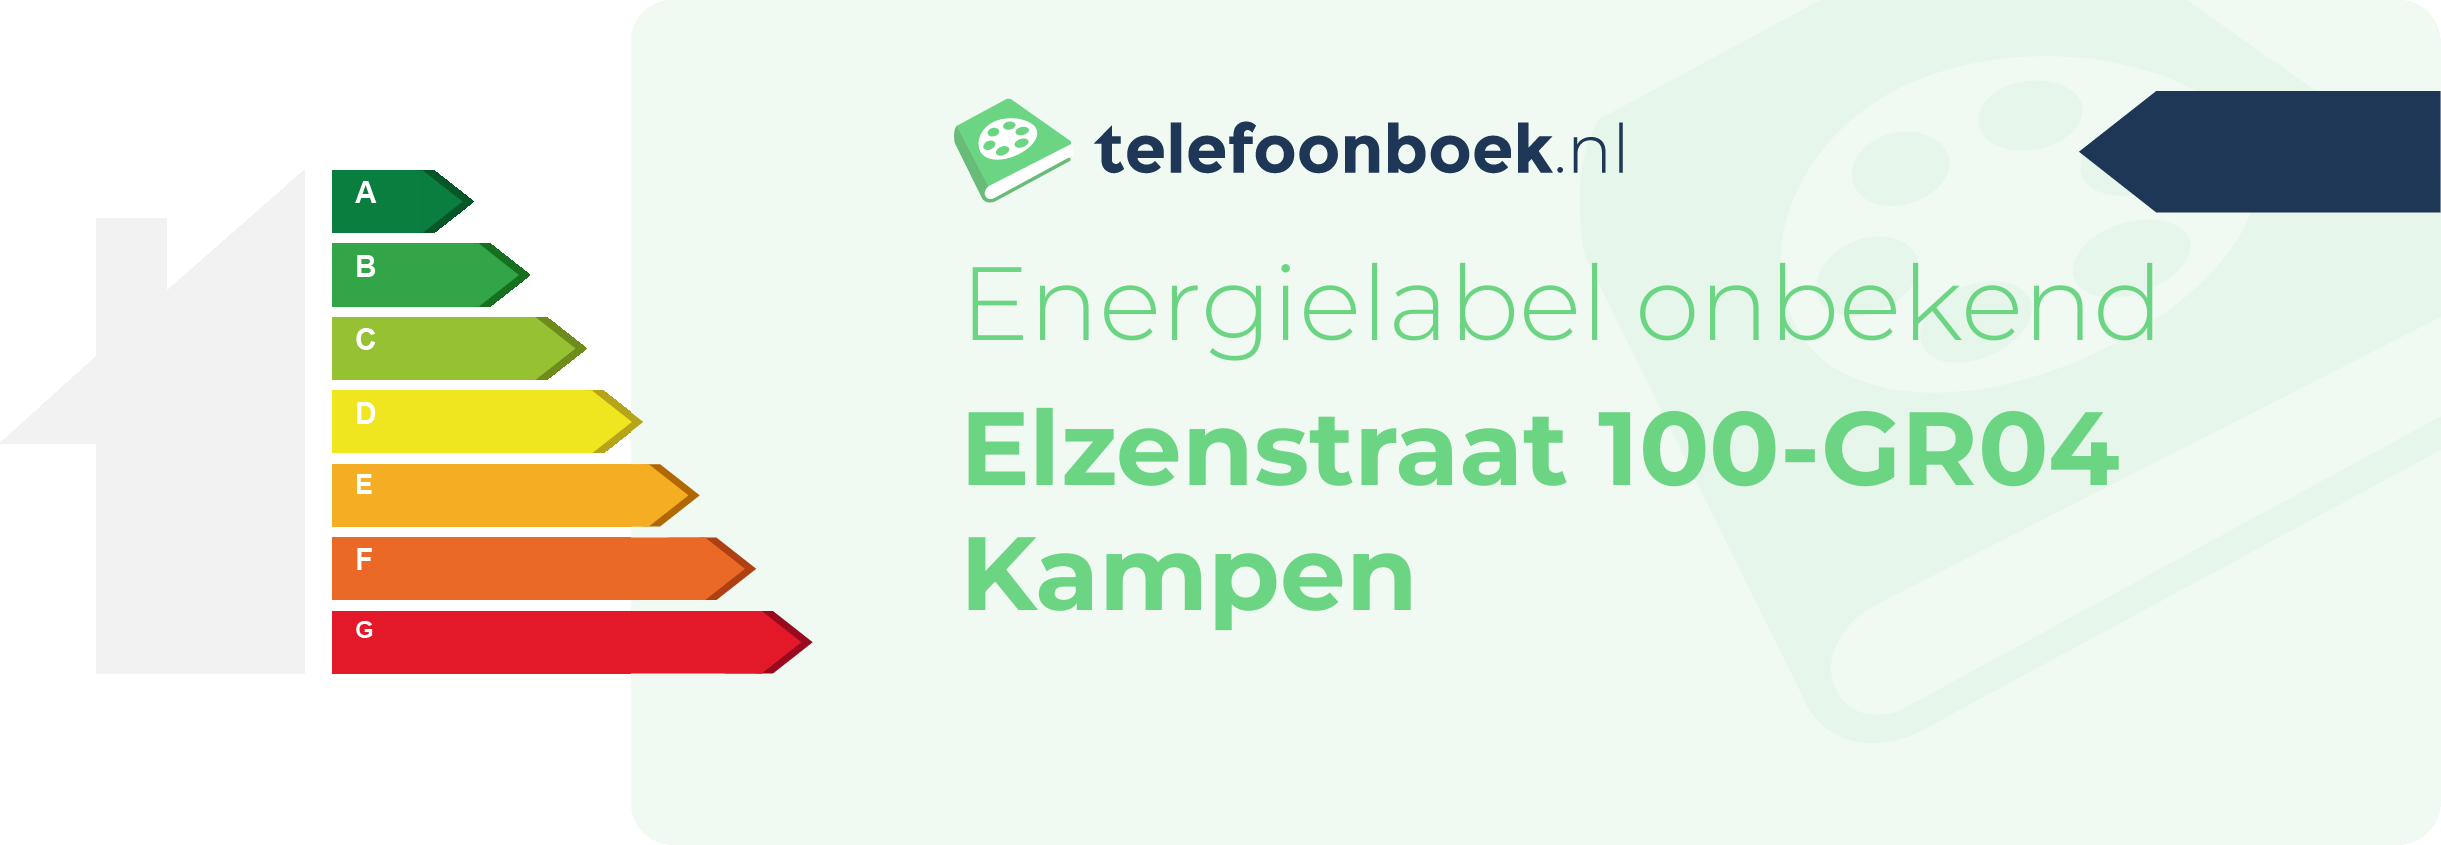 Energielabel Elzenstraat 100-GR04 Kampen